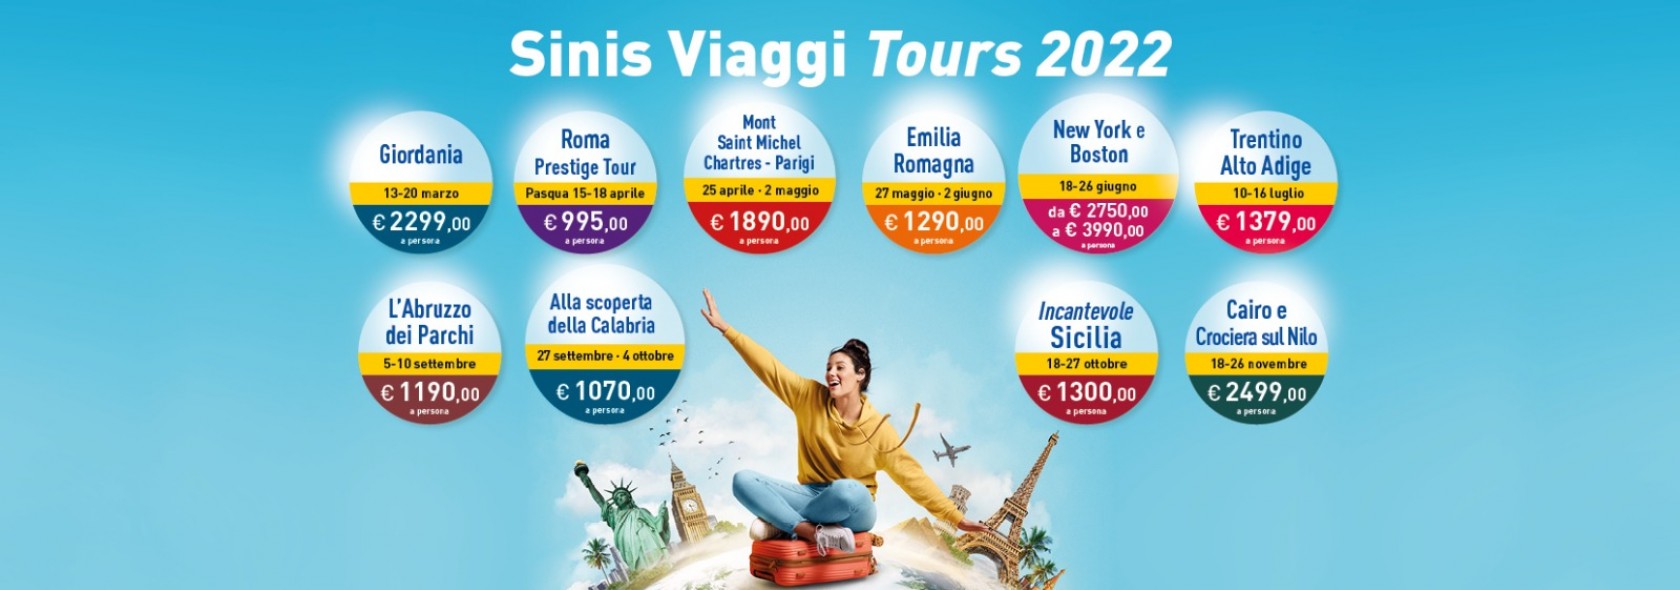 Tours Sinis Viaggi 2022